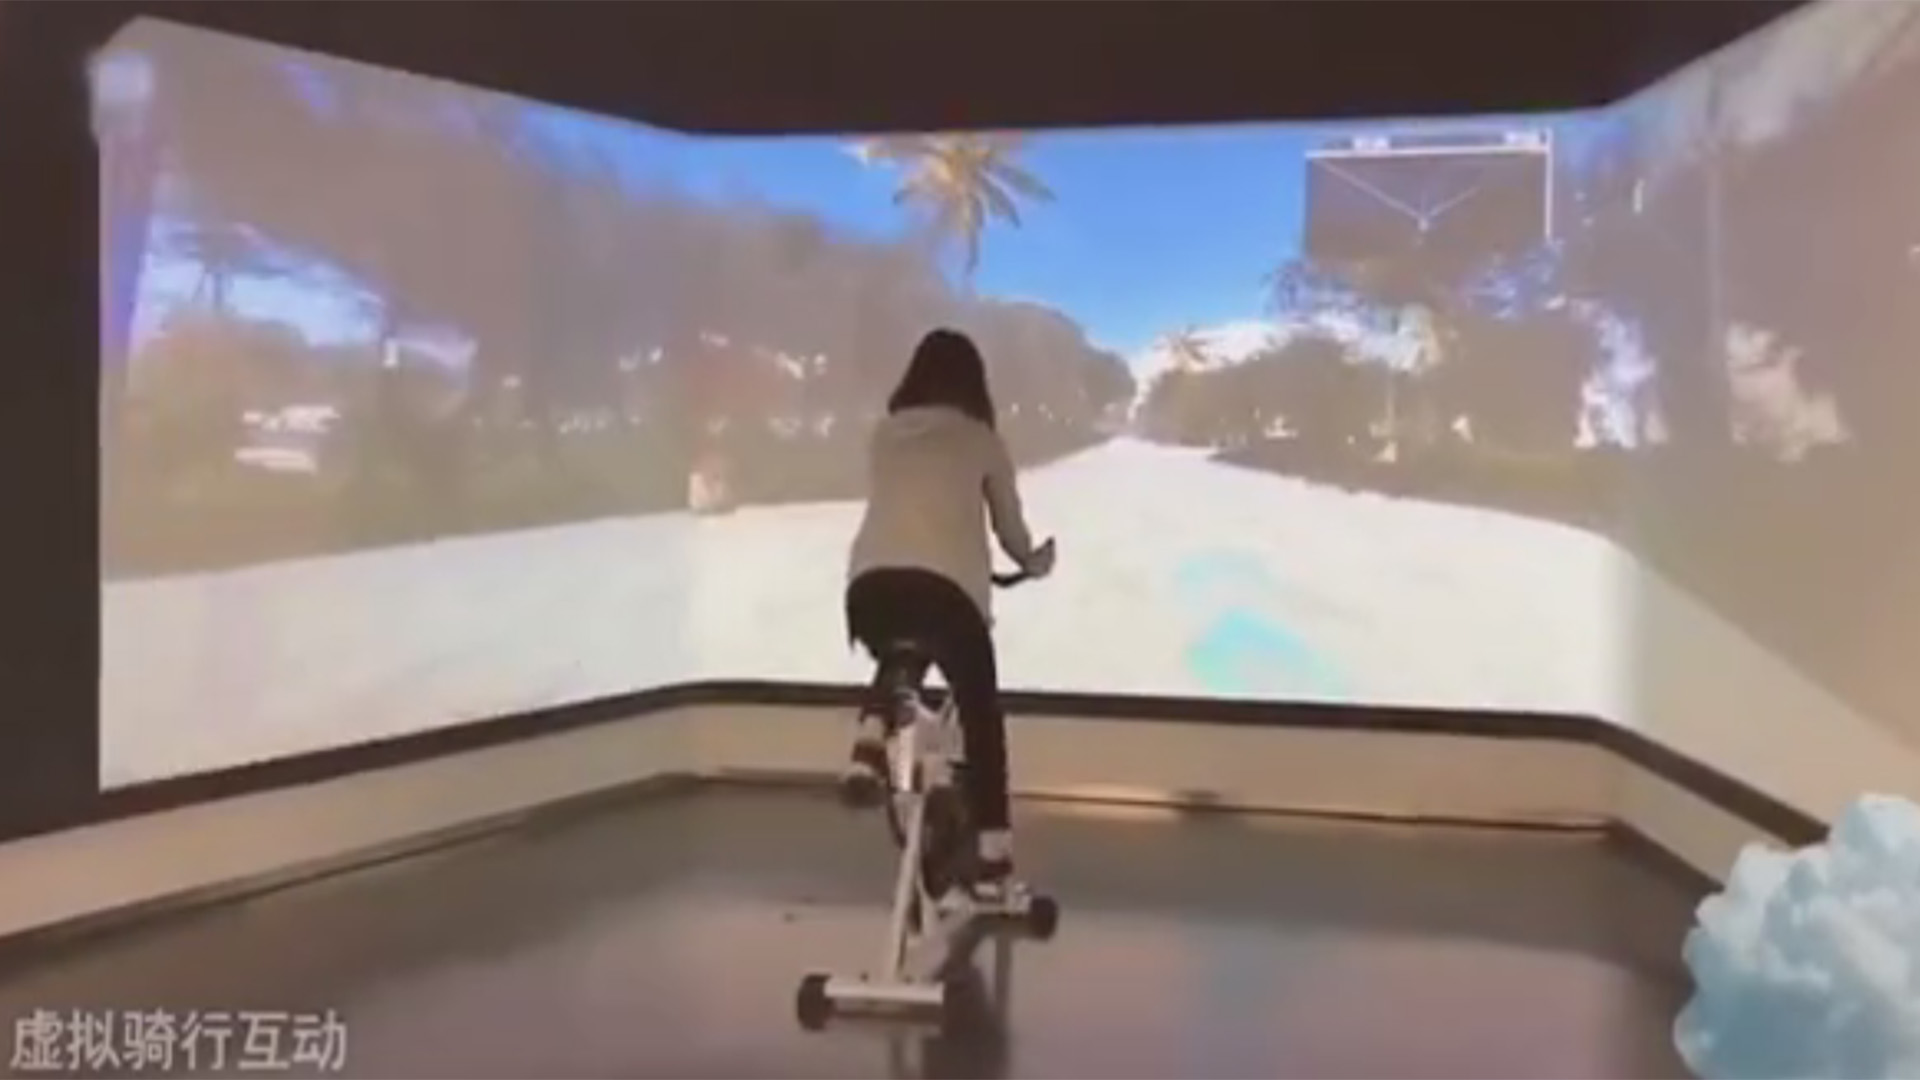 骑行互动系统在多媒体展厅的应用